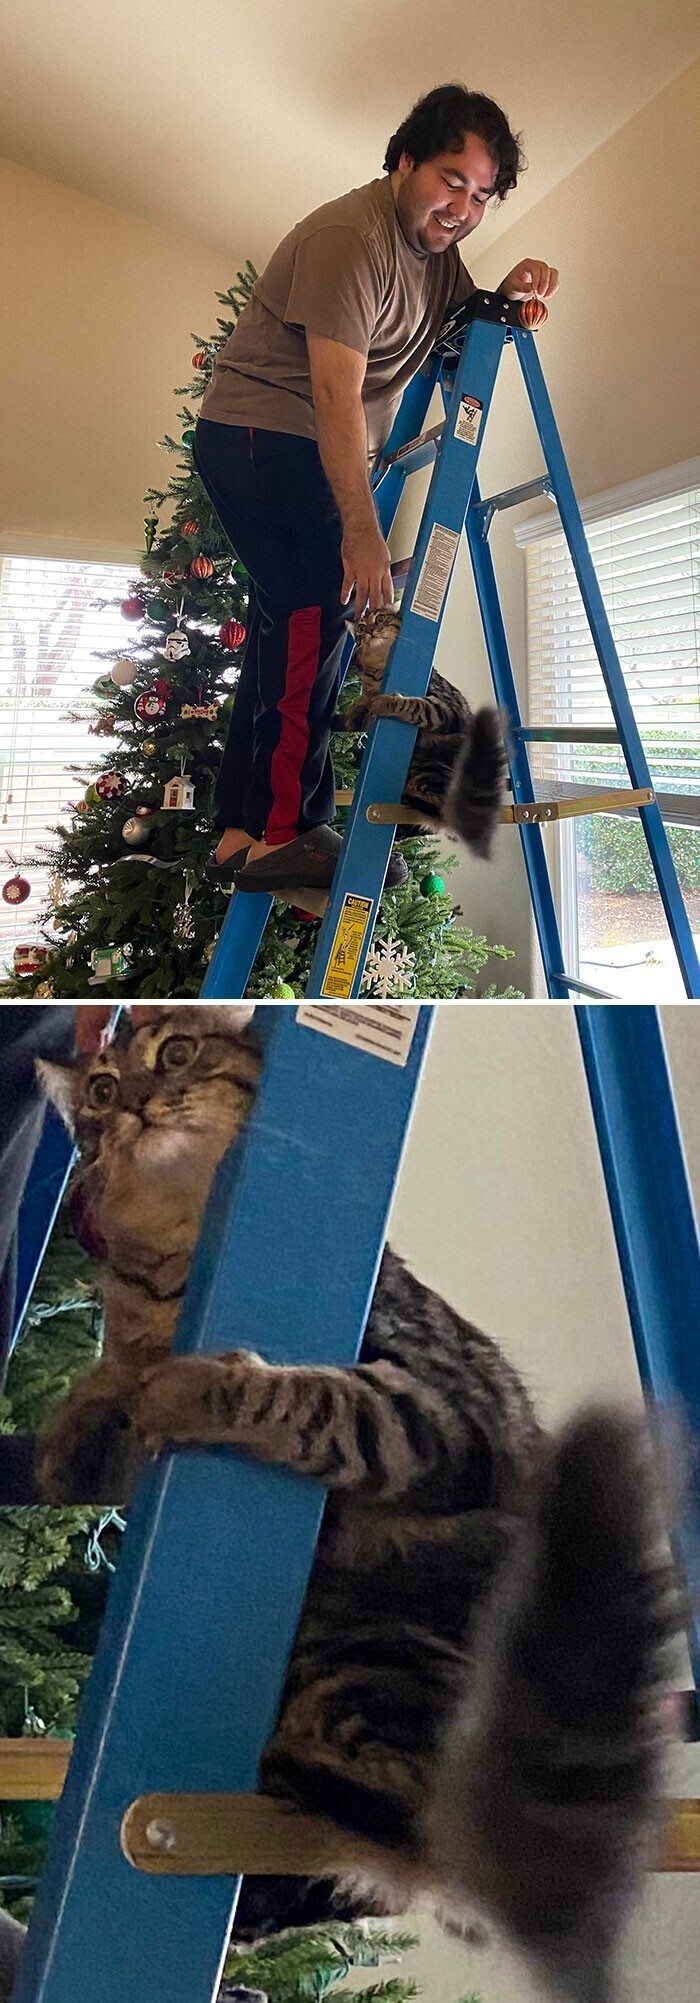 Кот пожалел о том, что решил помочь нарядить елку